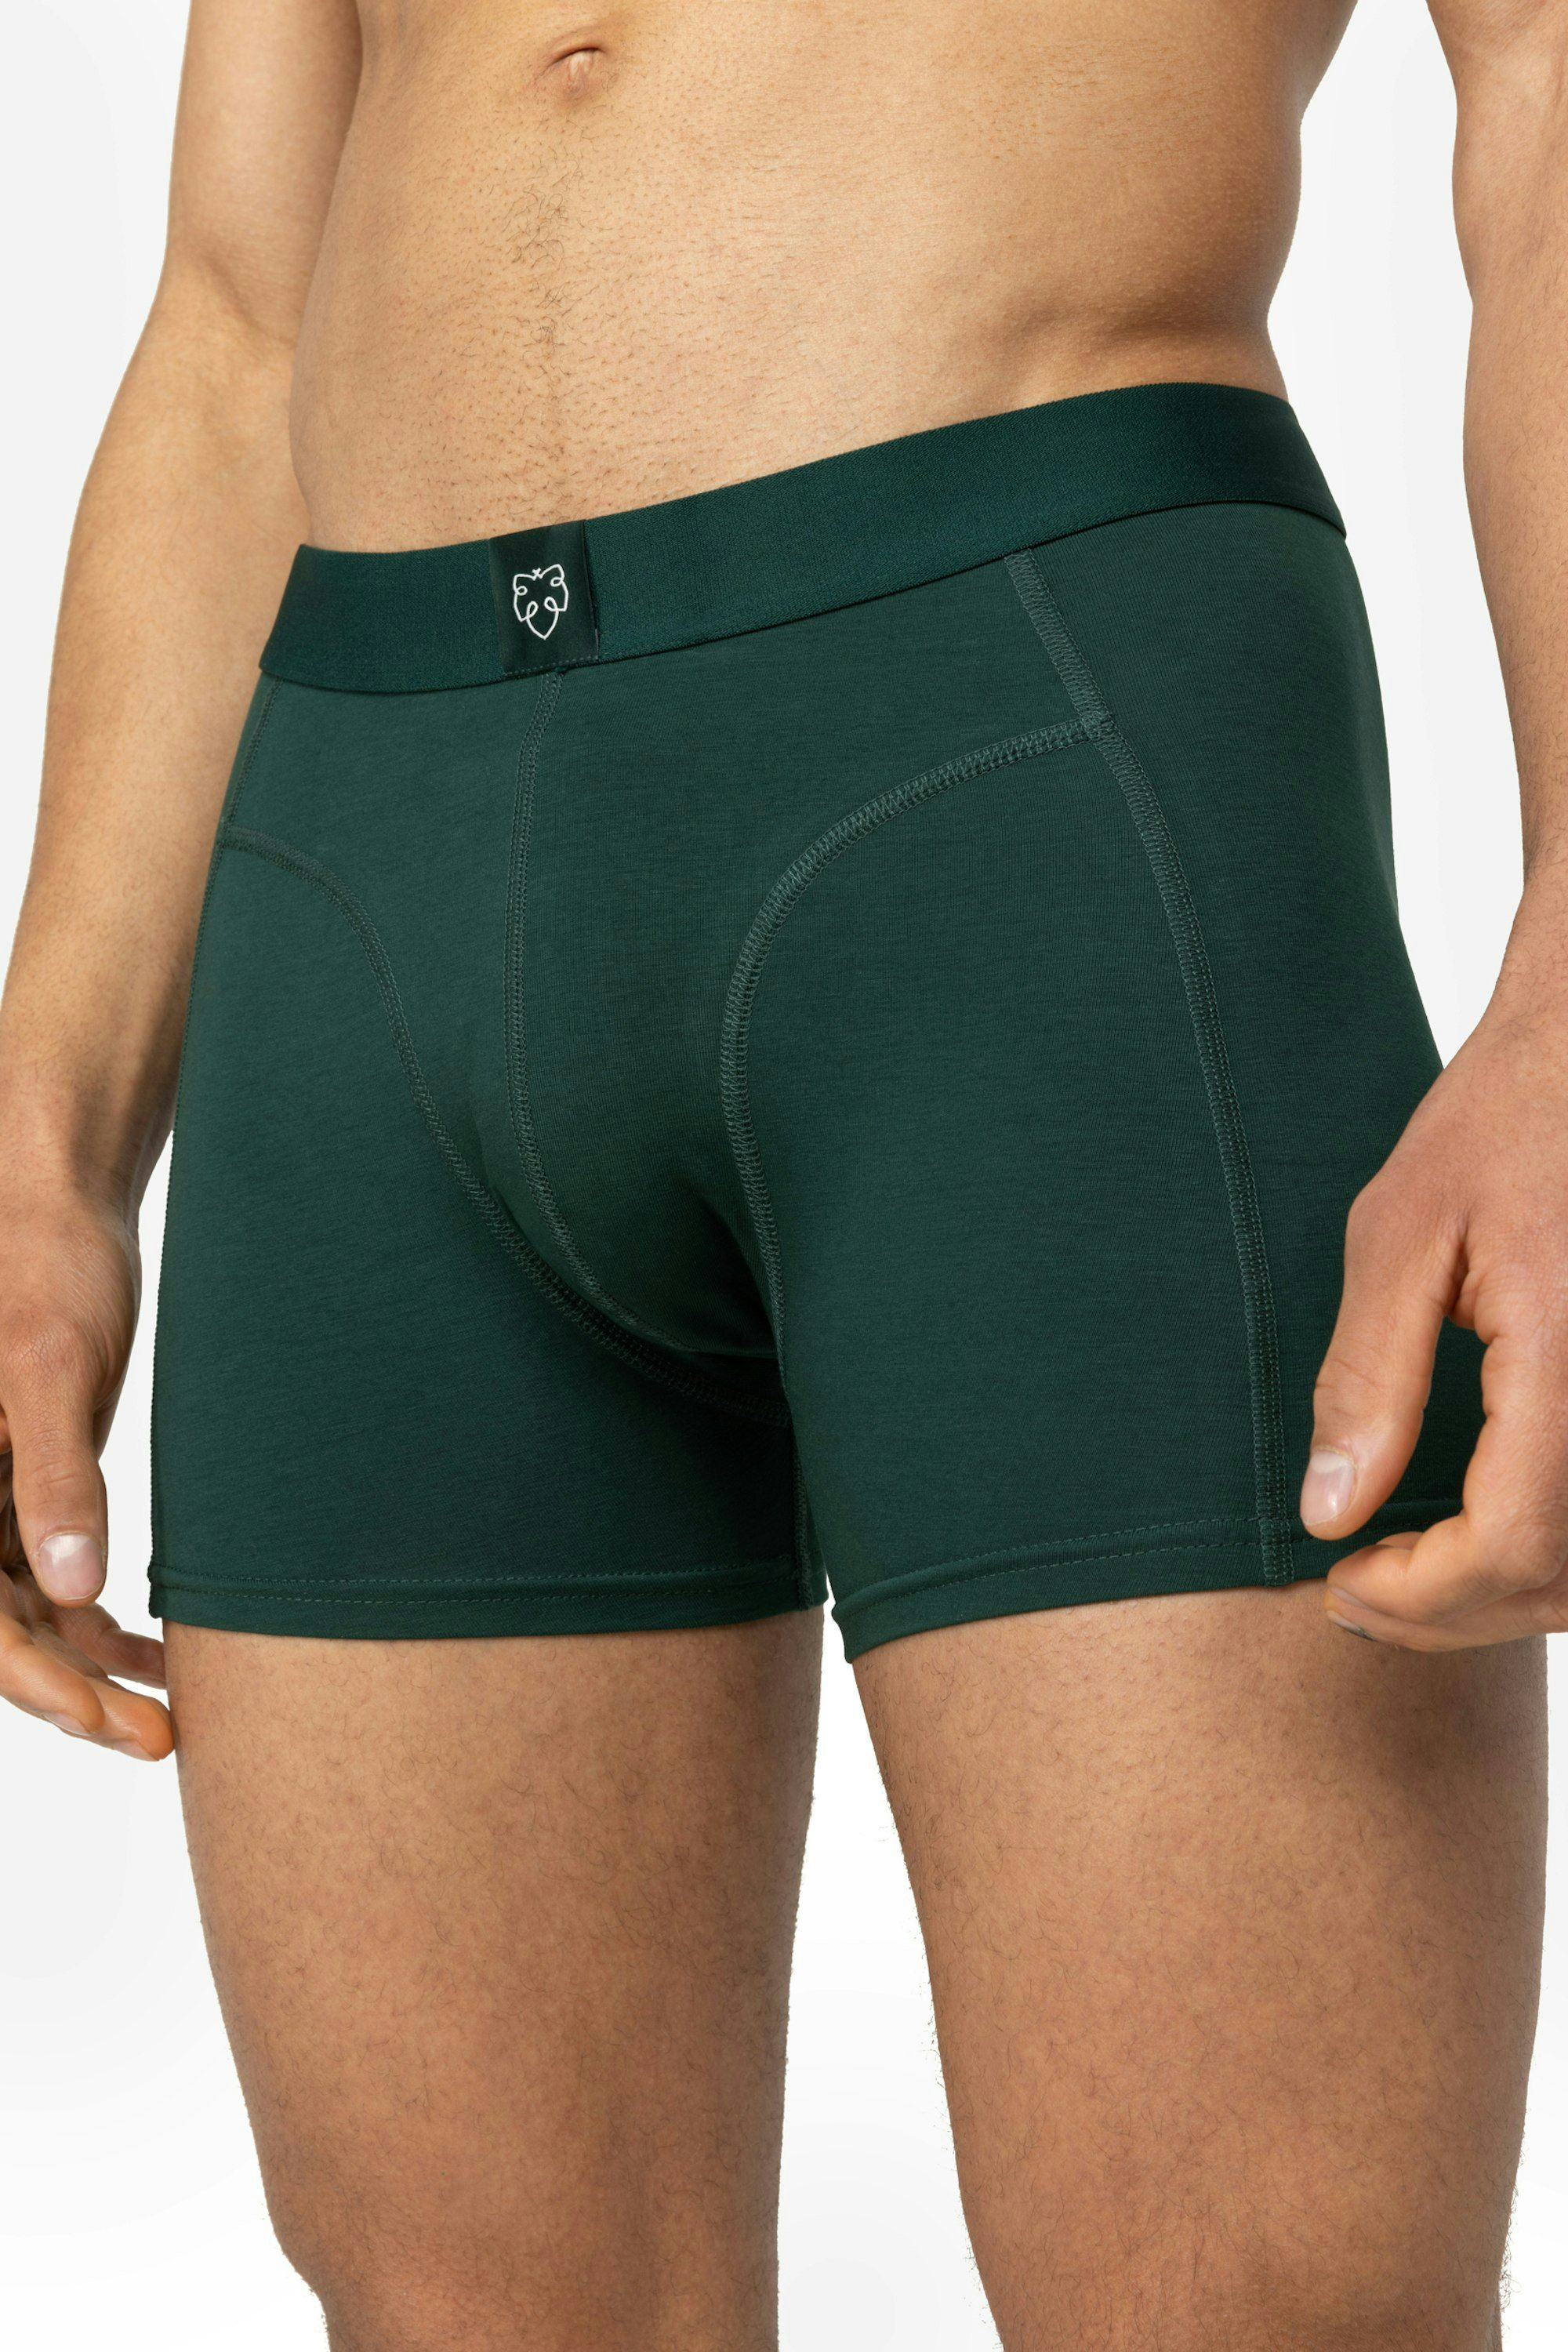 Green Underwear for Men